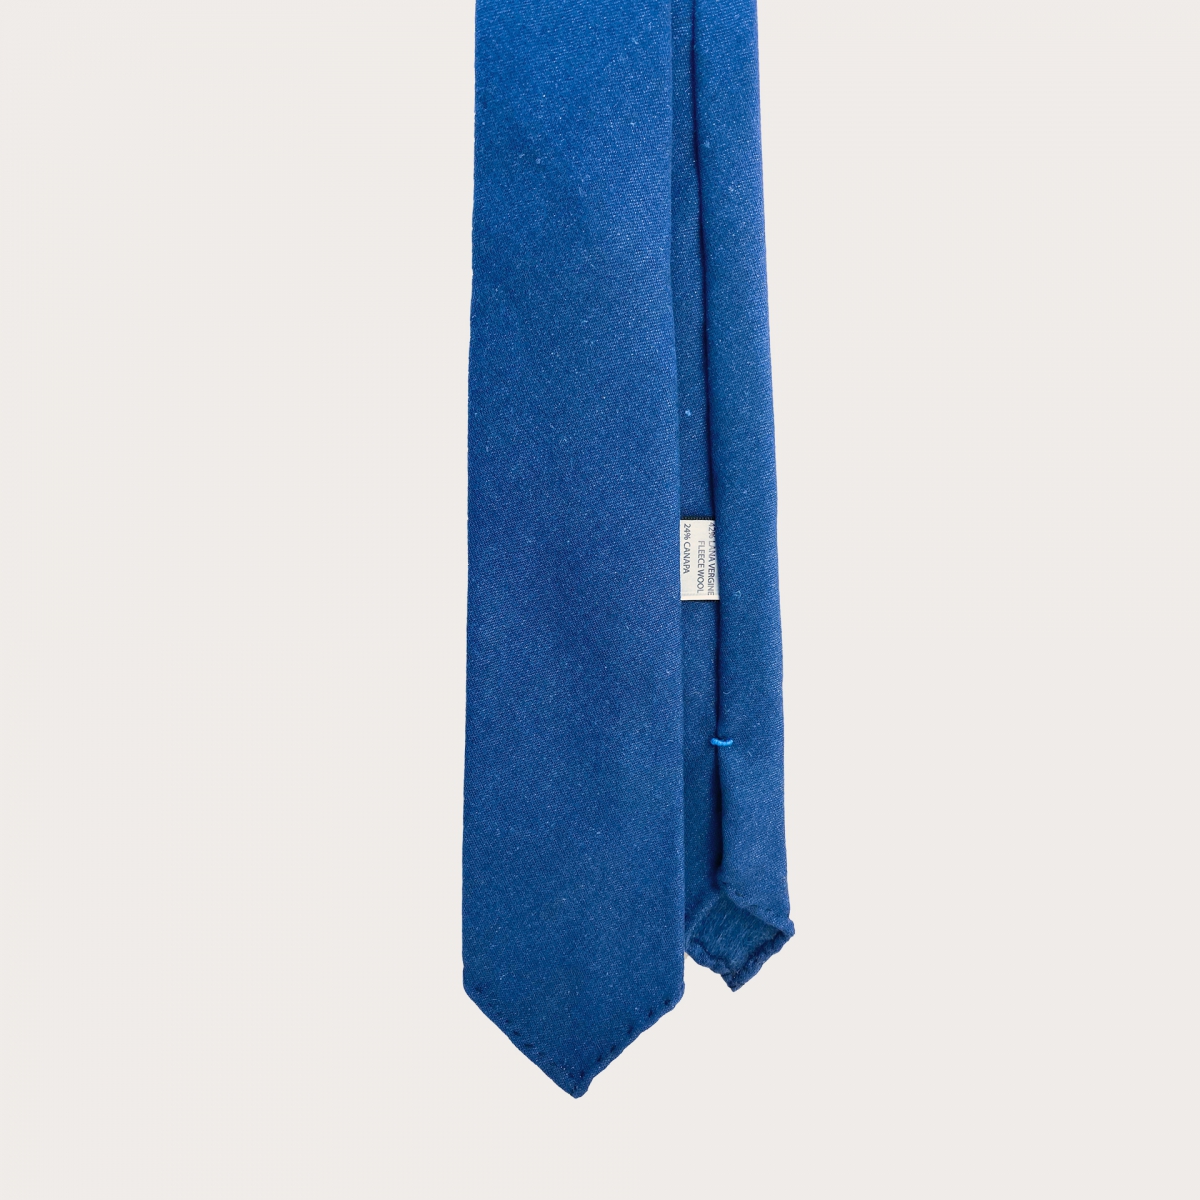 BRUCLE Cravate sans doublure bleue royal en soie et chavre